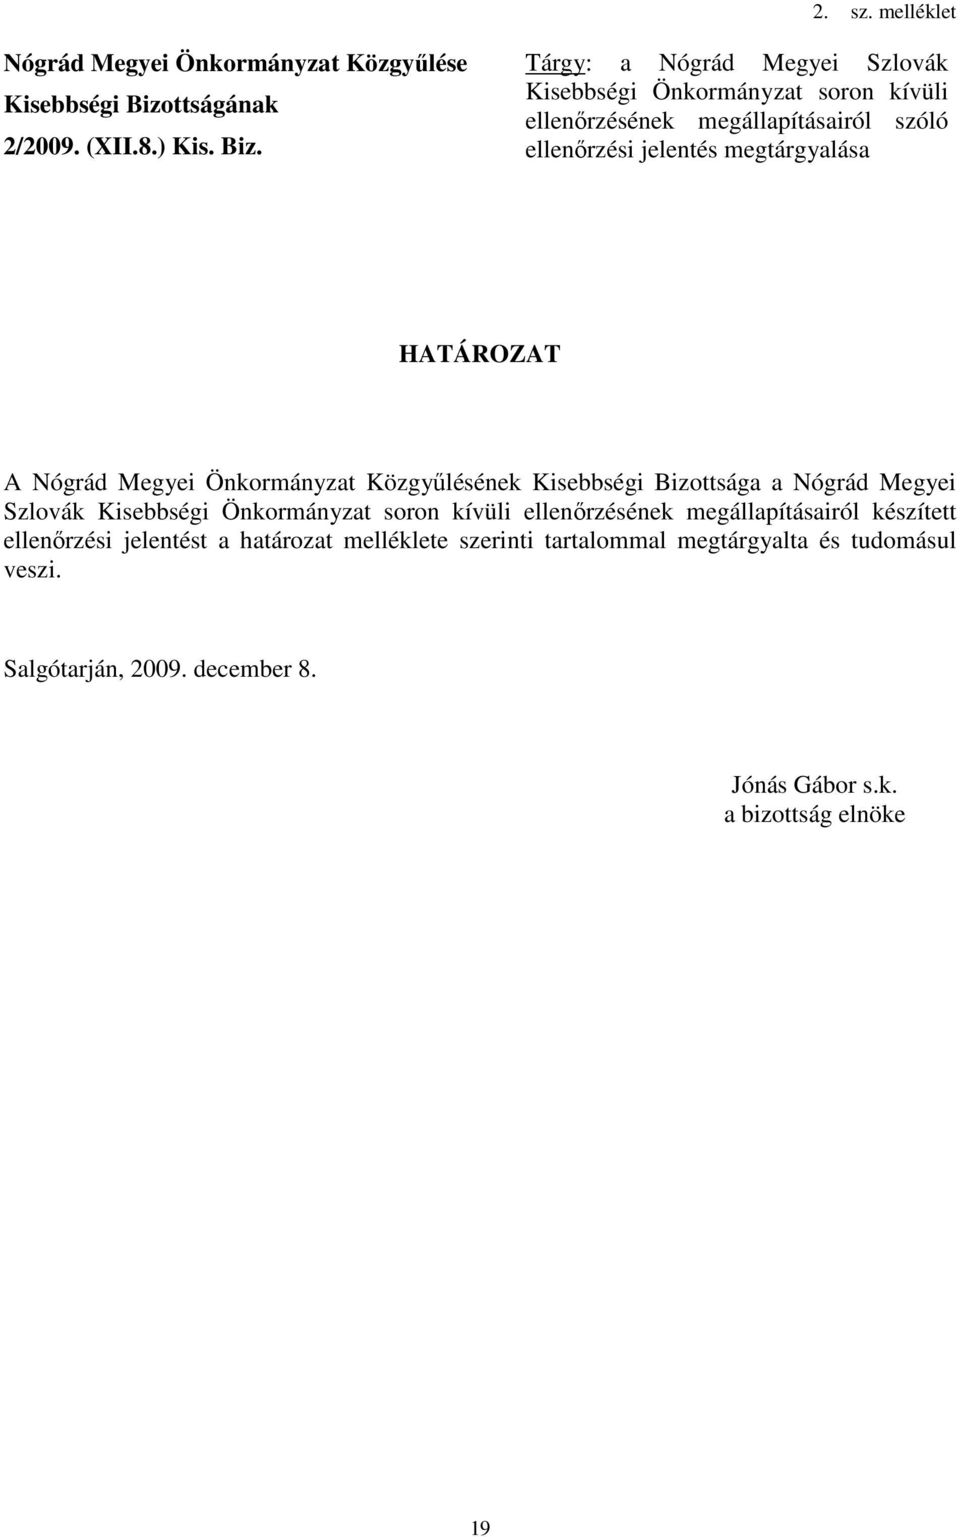 Tárgy: a Nógrád Megyei Szlovák Kisebbségi Önkormányzat soron kívüli ellenırzésének megállapításairól szóló ellenırzési jelentés megtárgyalása